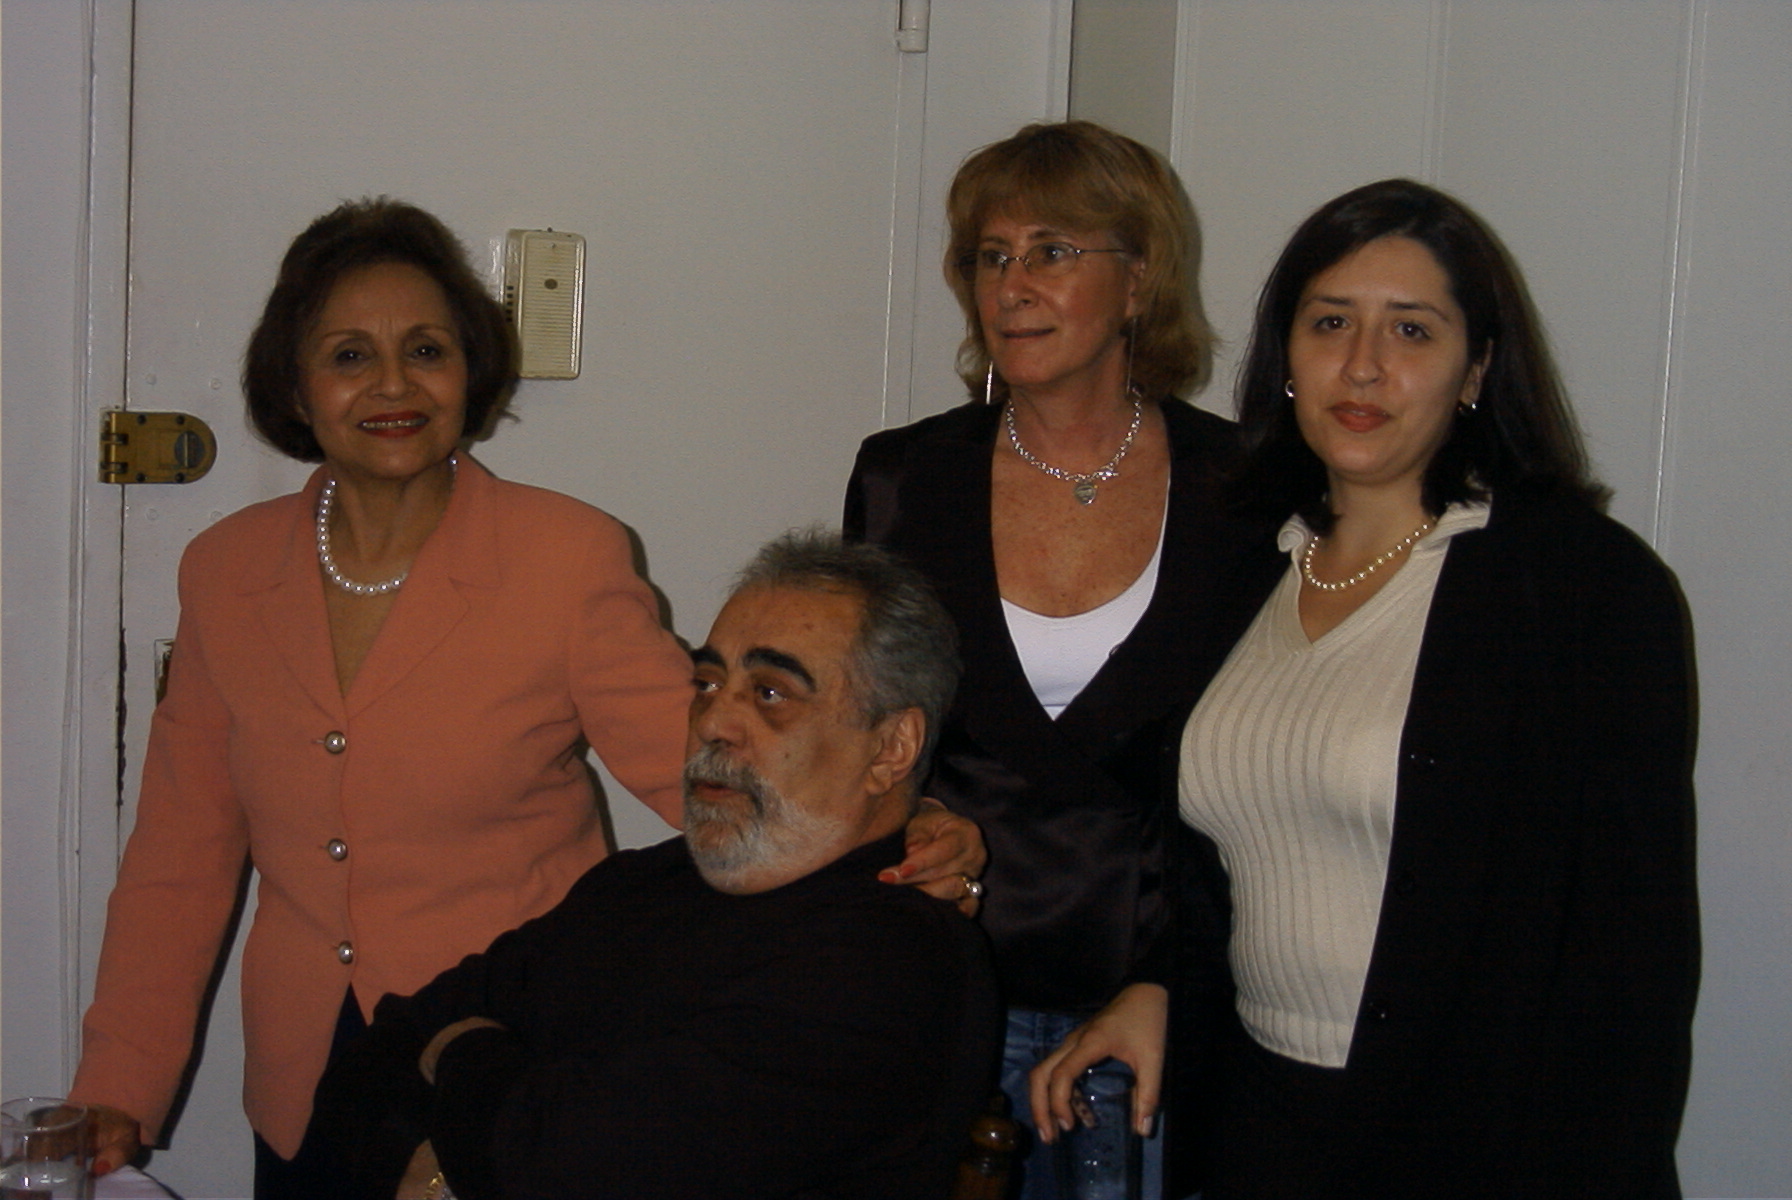 Terezinha, Rene, Zilia and Celio's wife